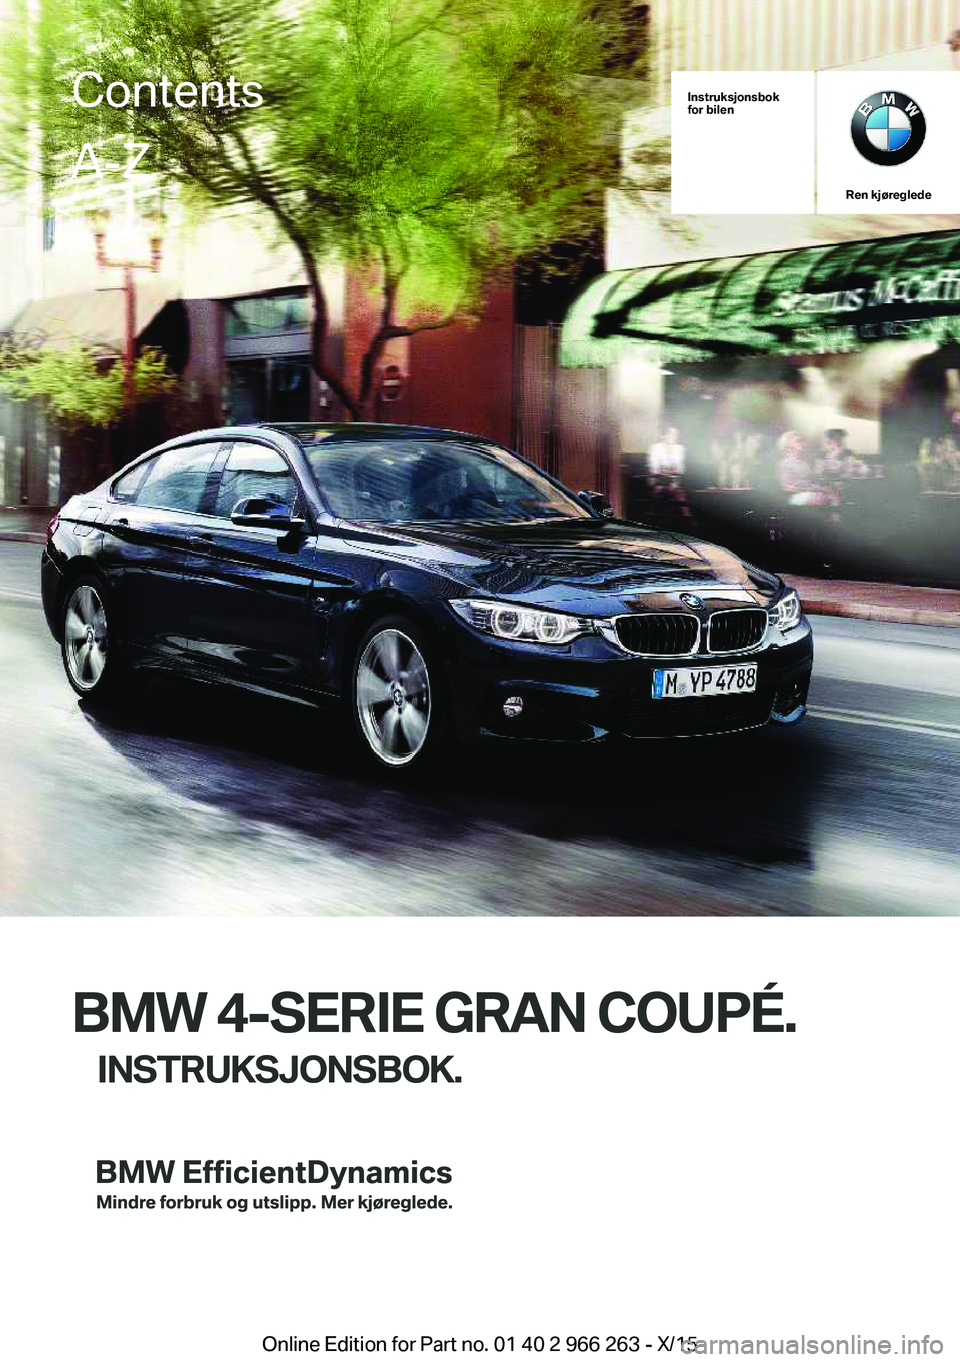 BMW 4 SERIES GRAN COUPE 2016  InstruksjonsbØker (in Norwegian) Instruksjonsbok
for bilen
Ren kjøreglede
BMW 4-SERIE GRAN COUPÉ.
INSTRUKSJONSBOK.
ContentsA-Z
Online Edition for Part no. 01 40 2 966 263 - X/15   